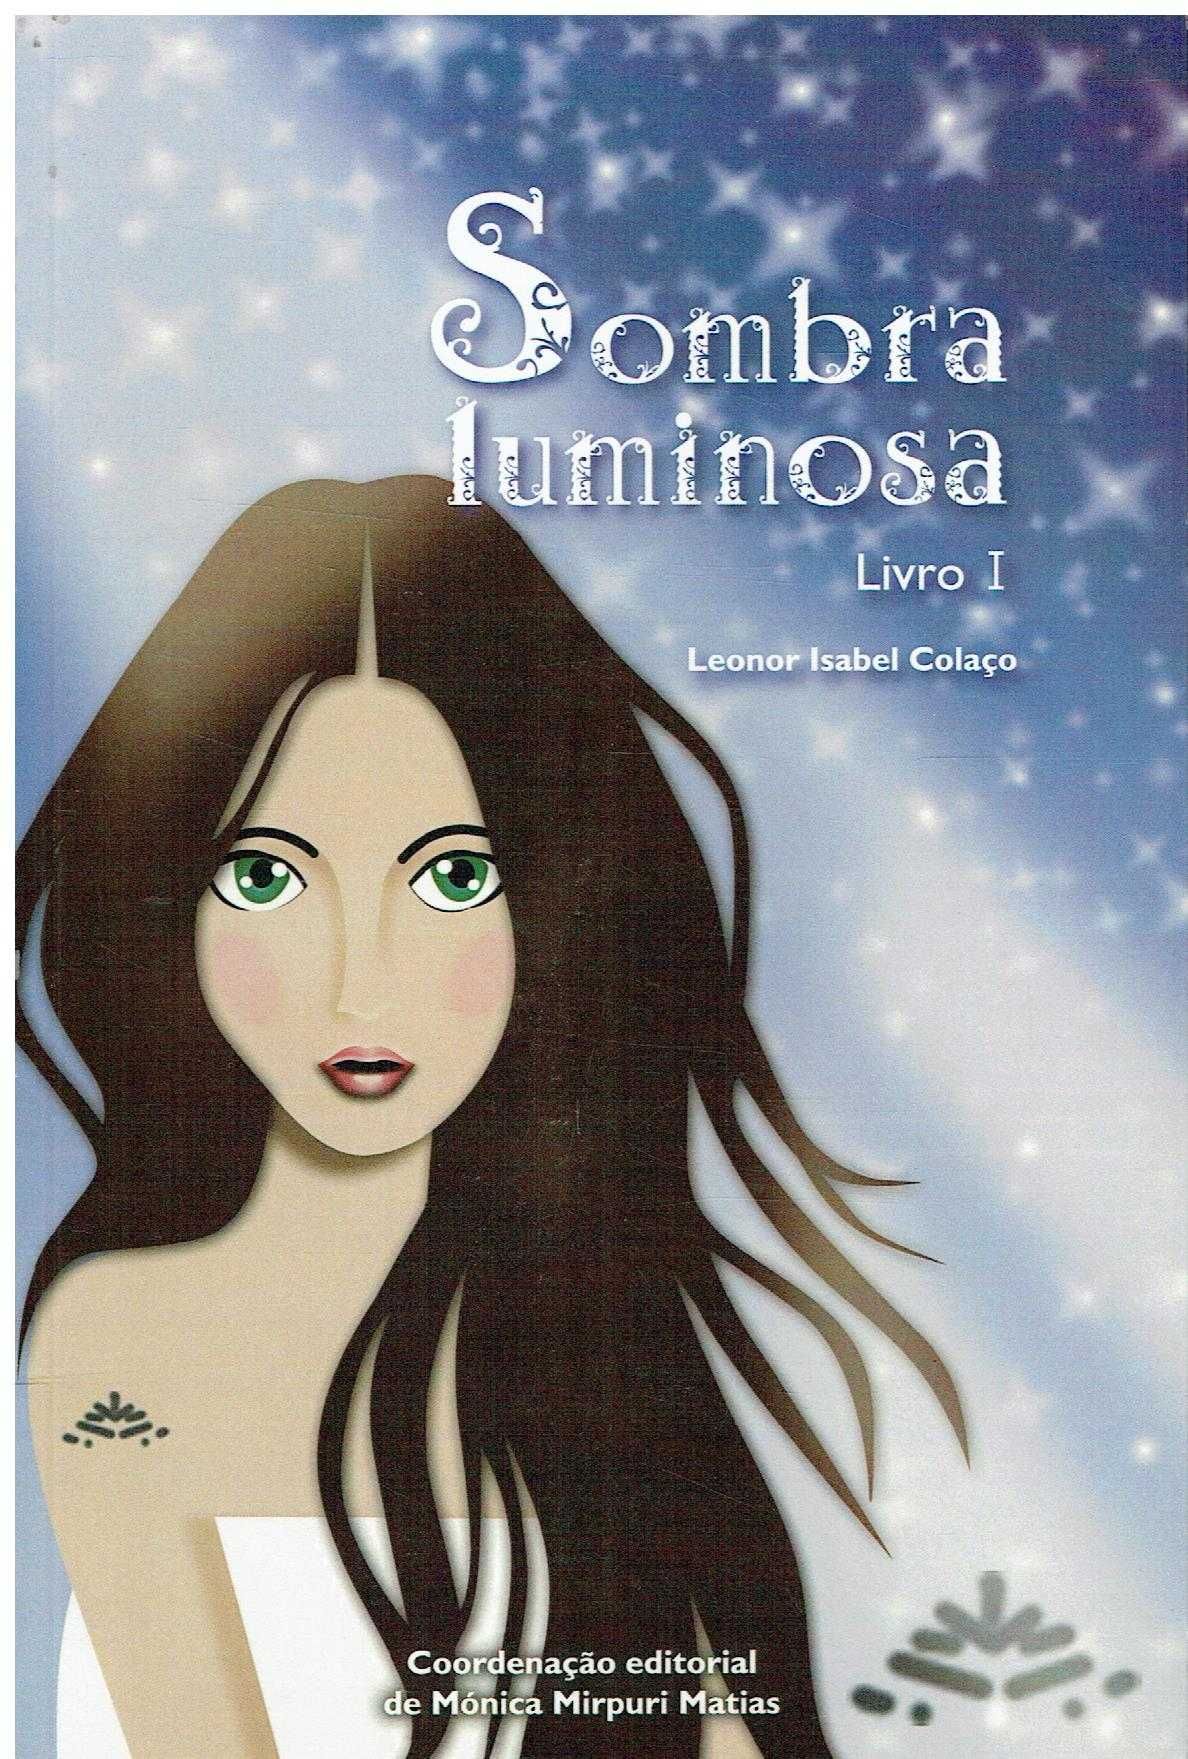 12843

Sombra Luminosa
Livro I
de Leonor Isabel Colaço